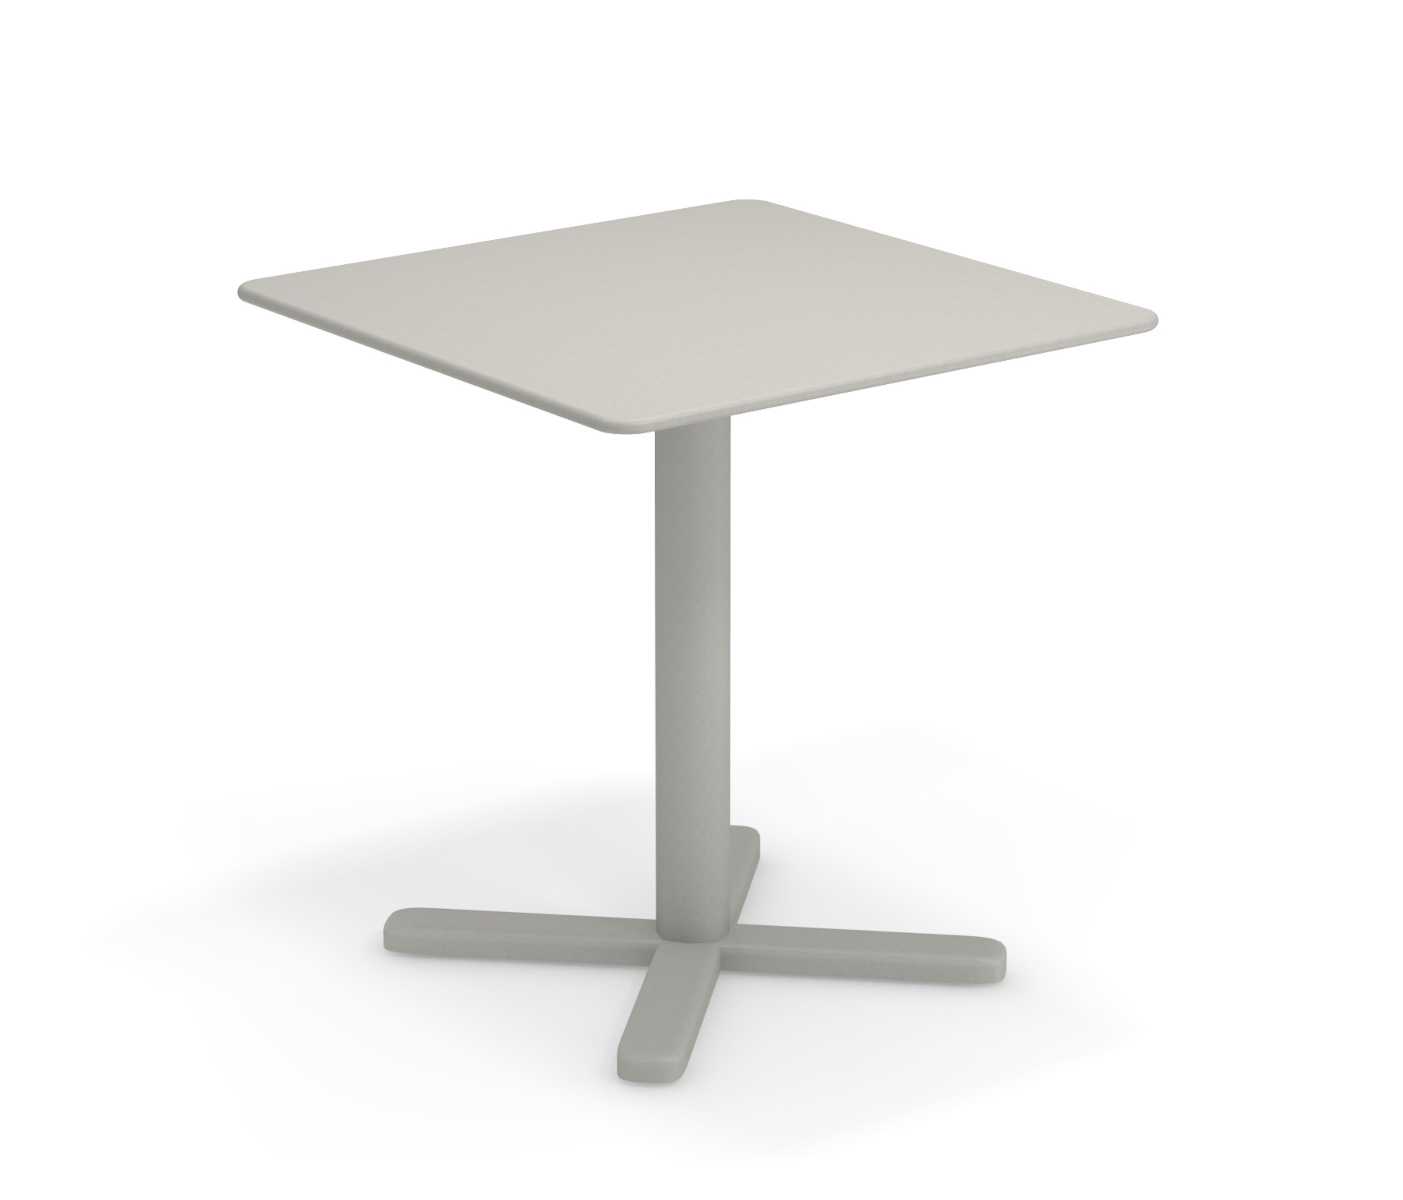 Darwin Tisch, 70 x 70 cm, graugrün